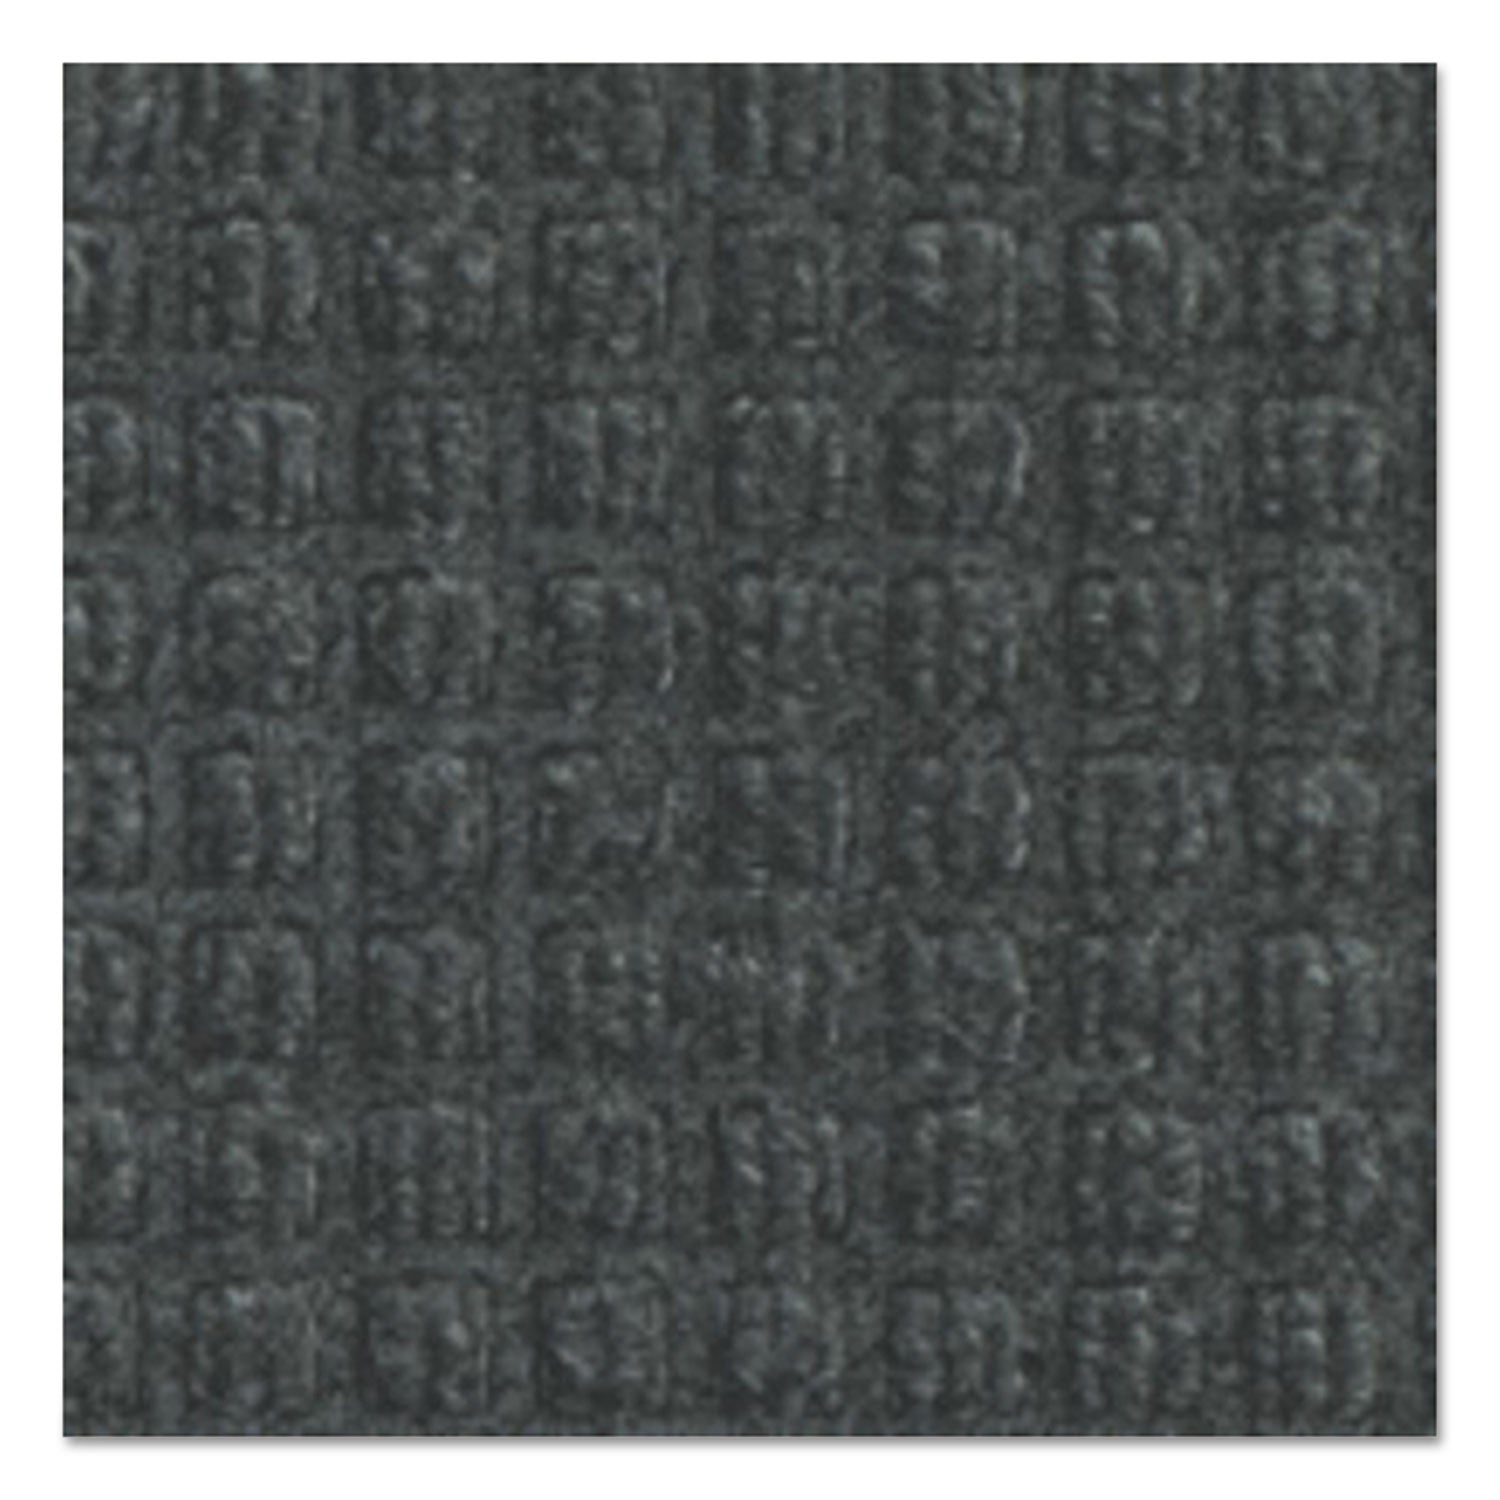 Super-Soaker Wiper Mat with Gripper Bottom, Polypropylene, 46 x 72, Charcoal - 